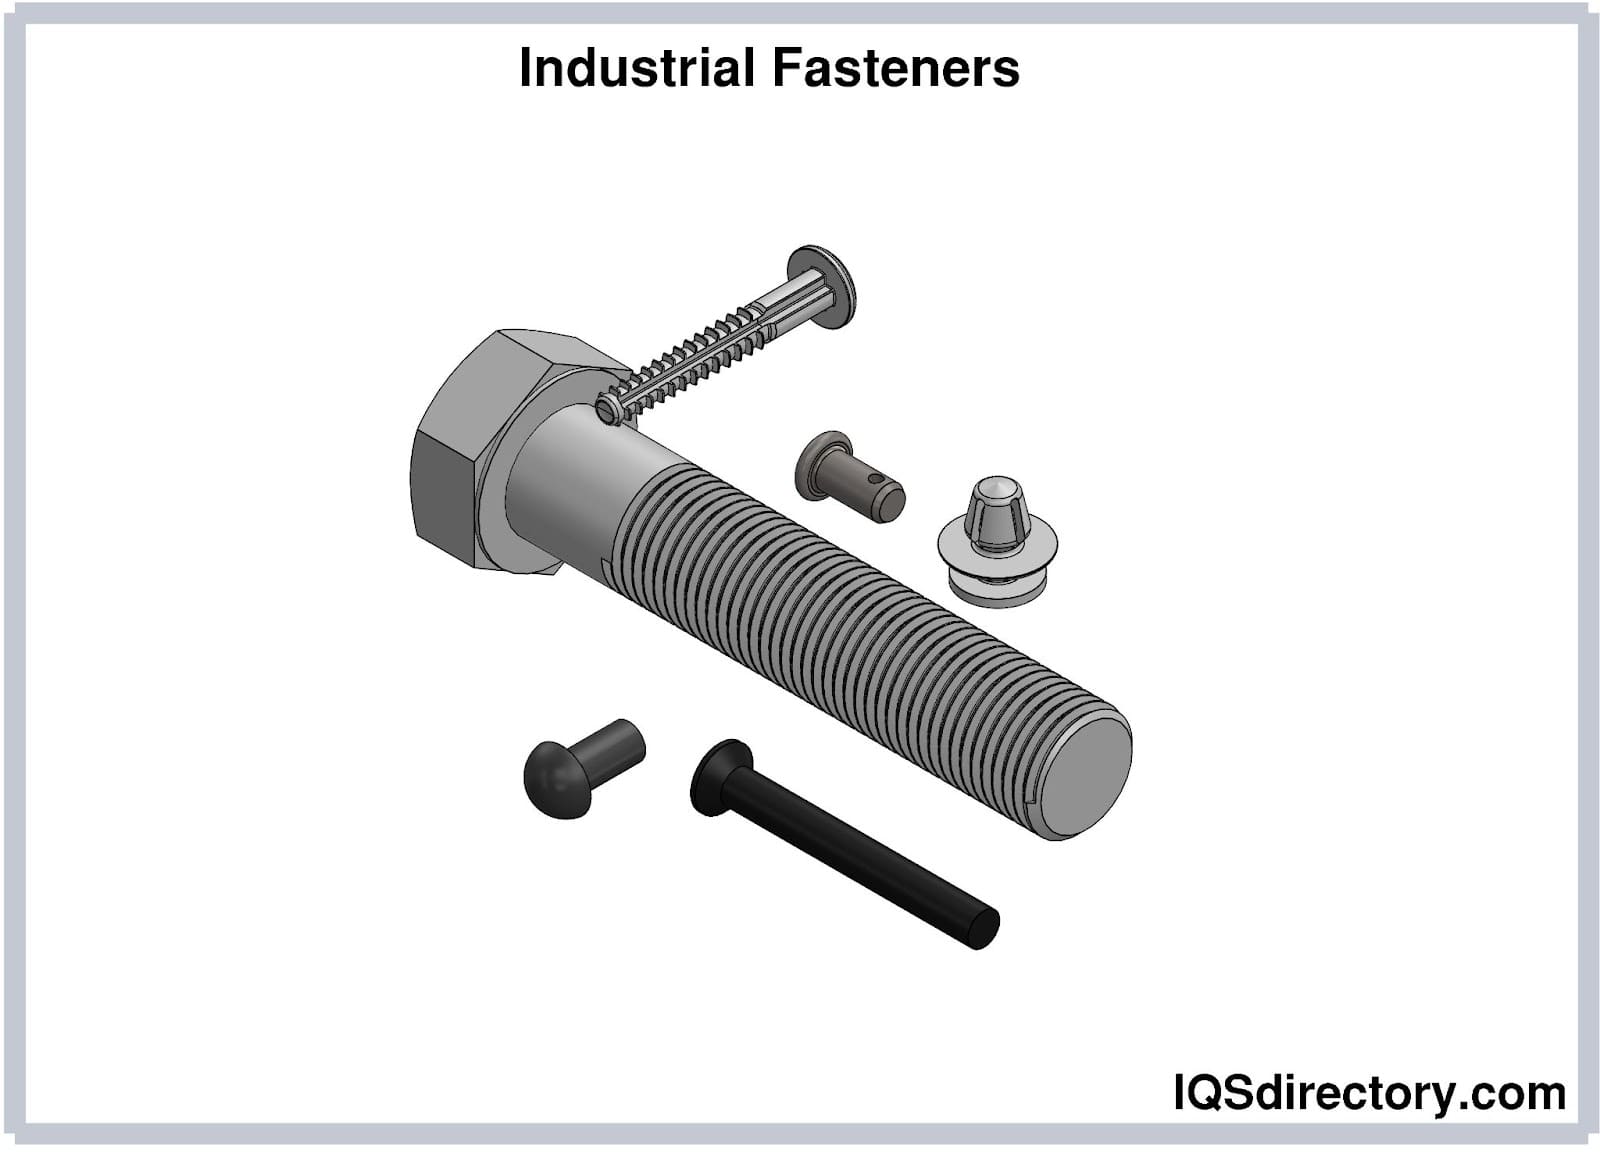 Industrial Fasteners